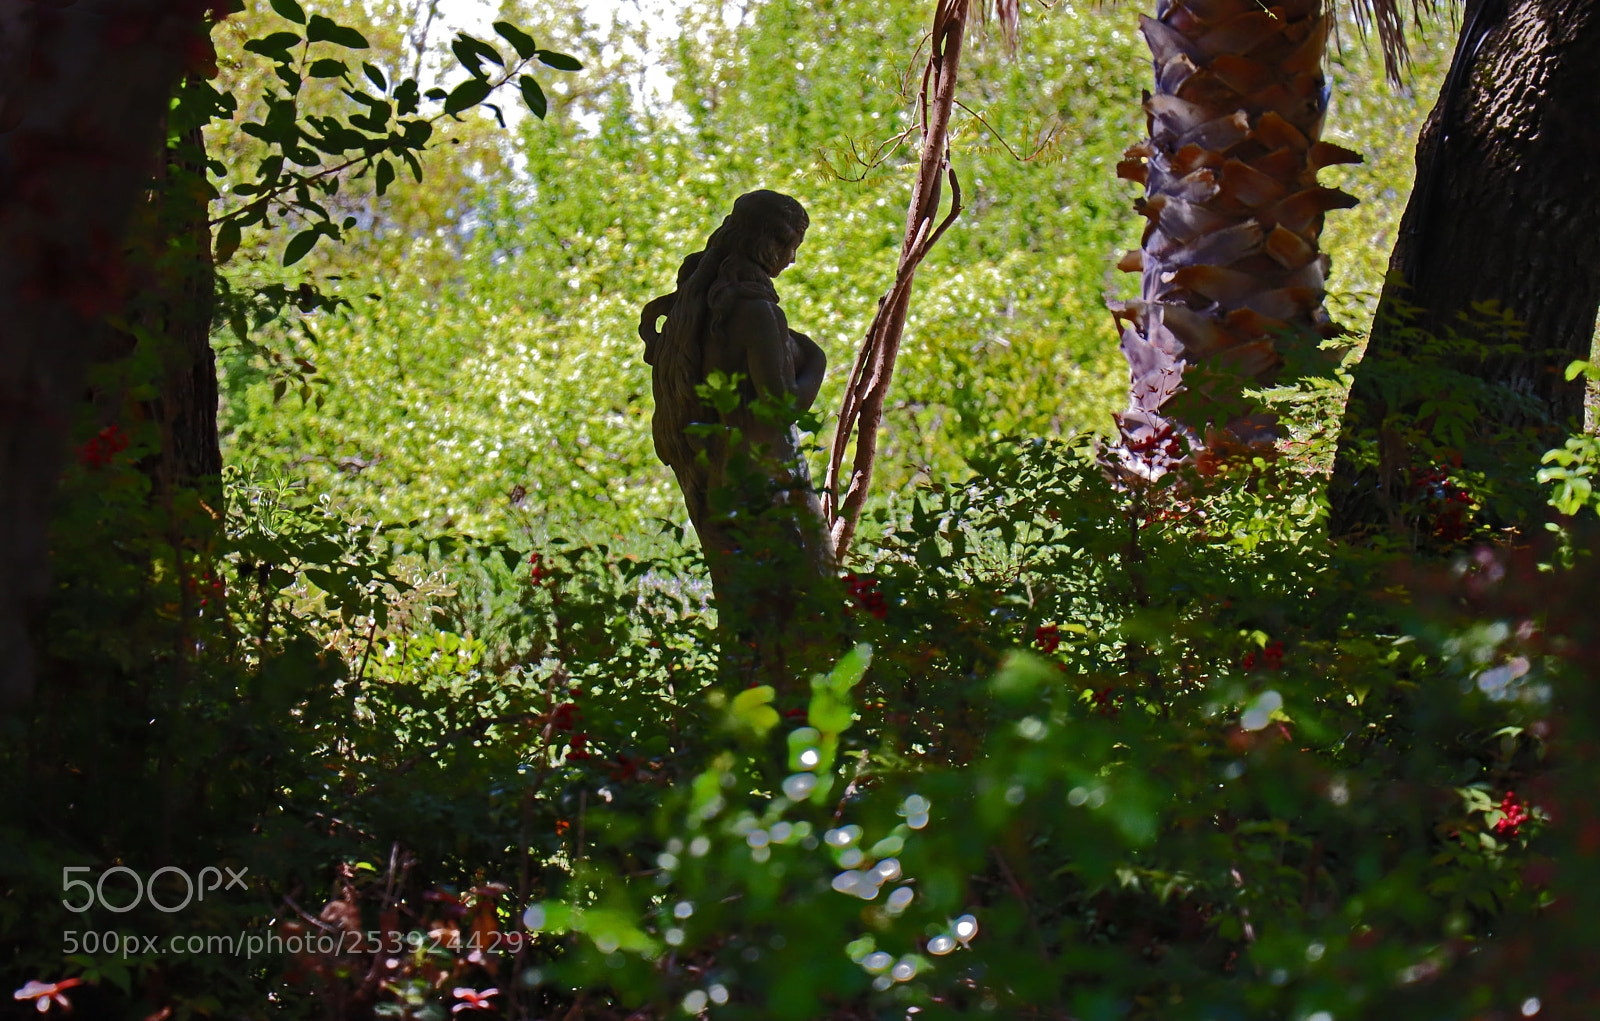 Canon EOS M50 (EOS Kiss M) sample photo. Garden silhouette photography